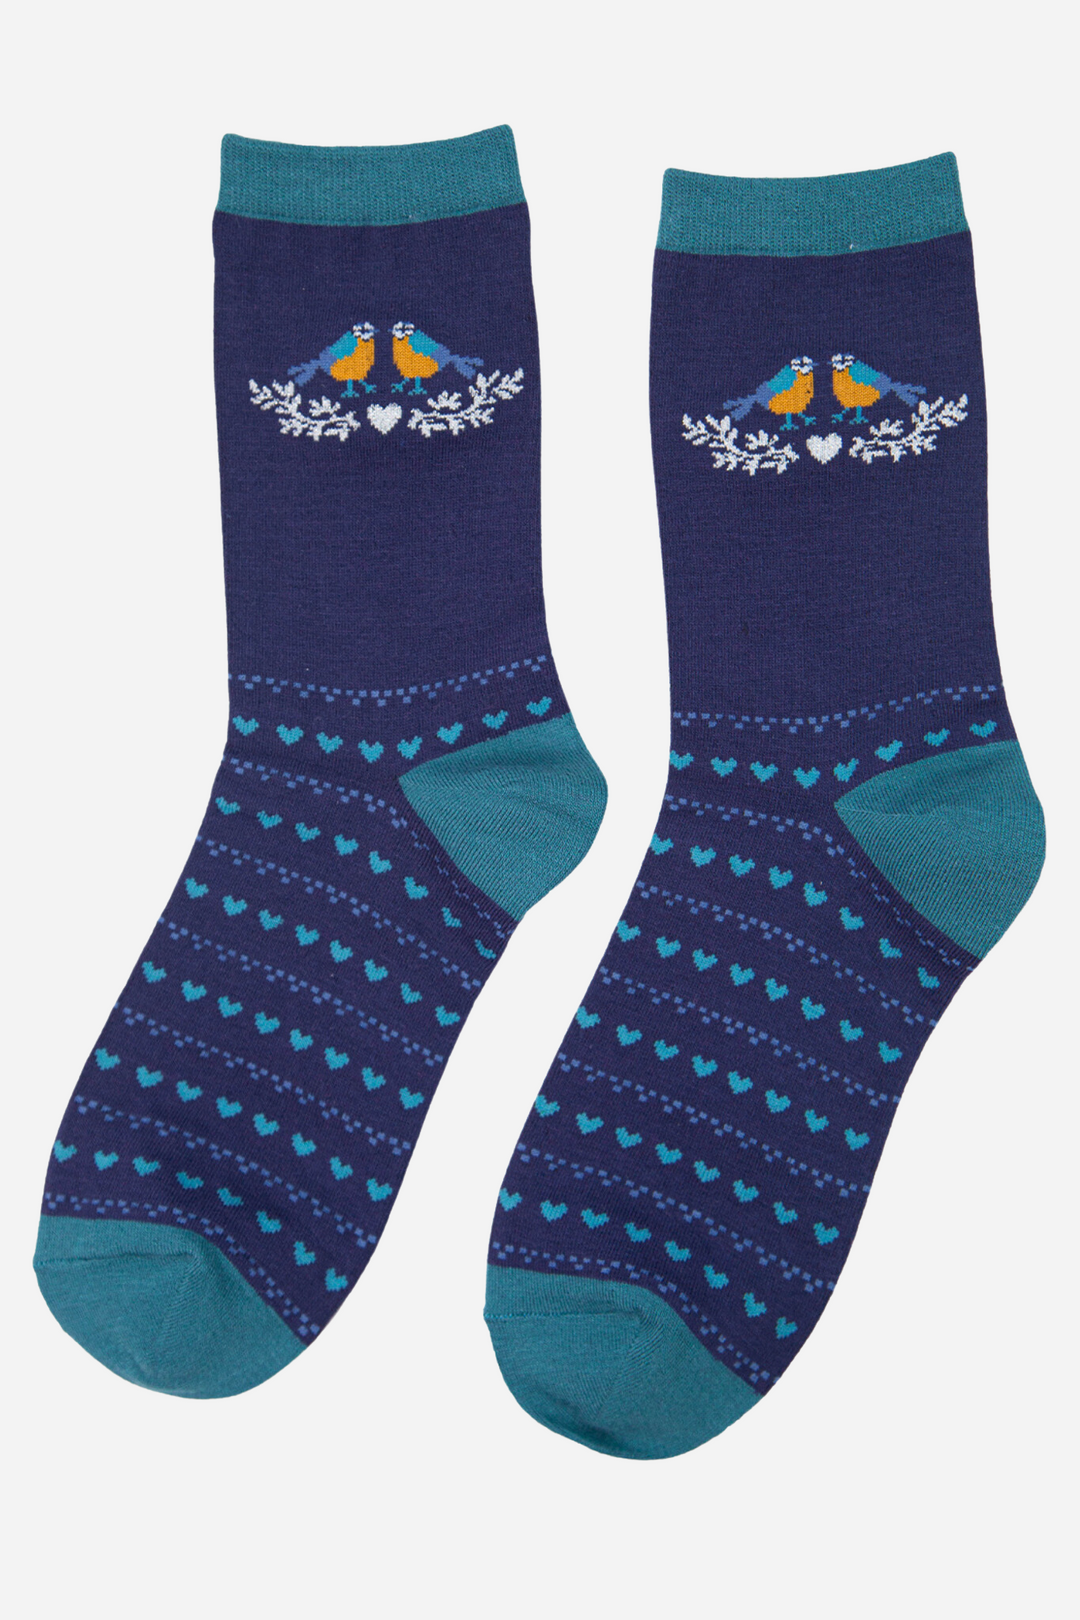 Women's Bamboo Socks Blue Tit Bird Print Love Heart Ankle Socks Blue